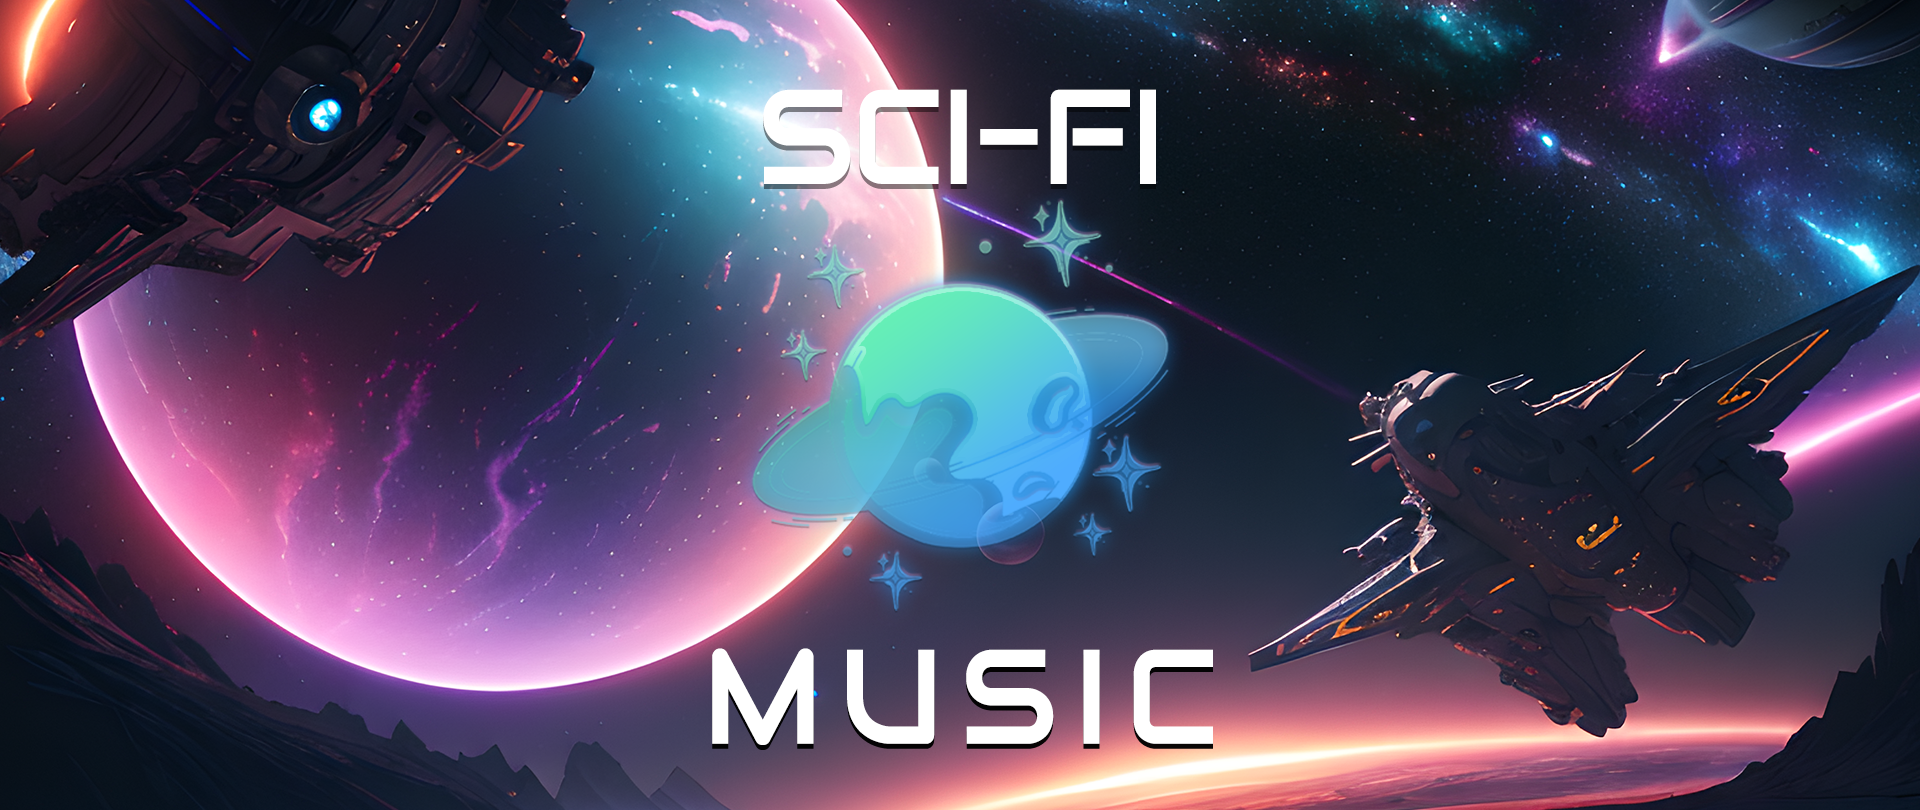 Sci-Fi Music Volume 1